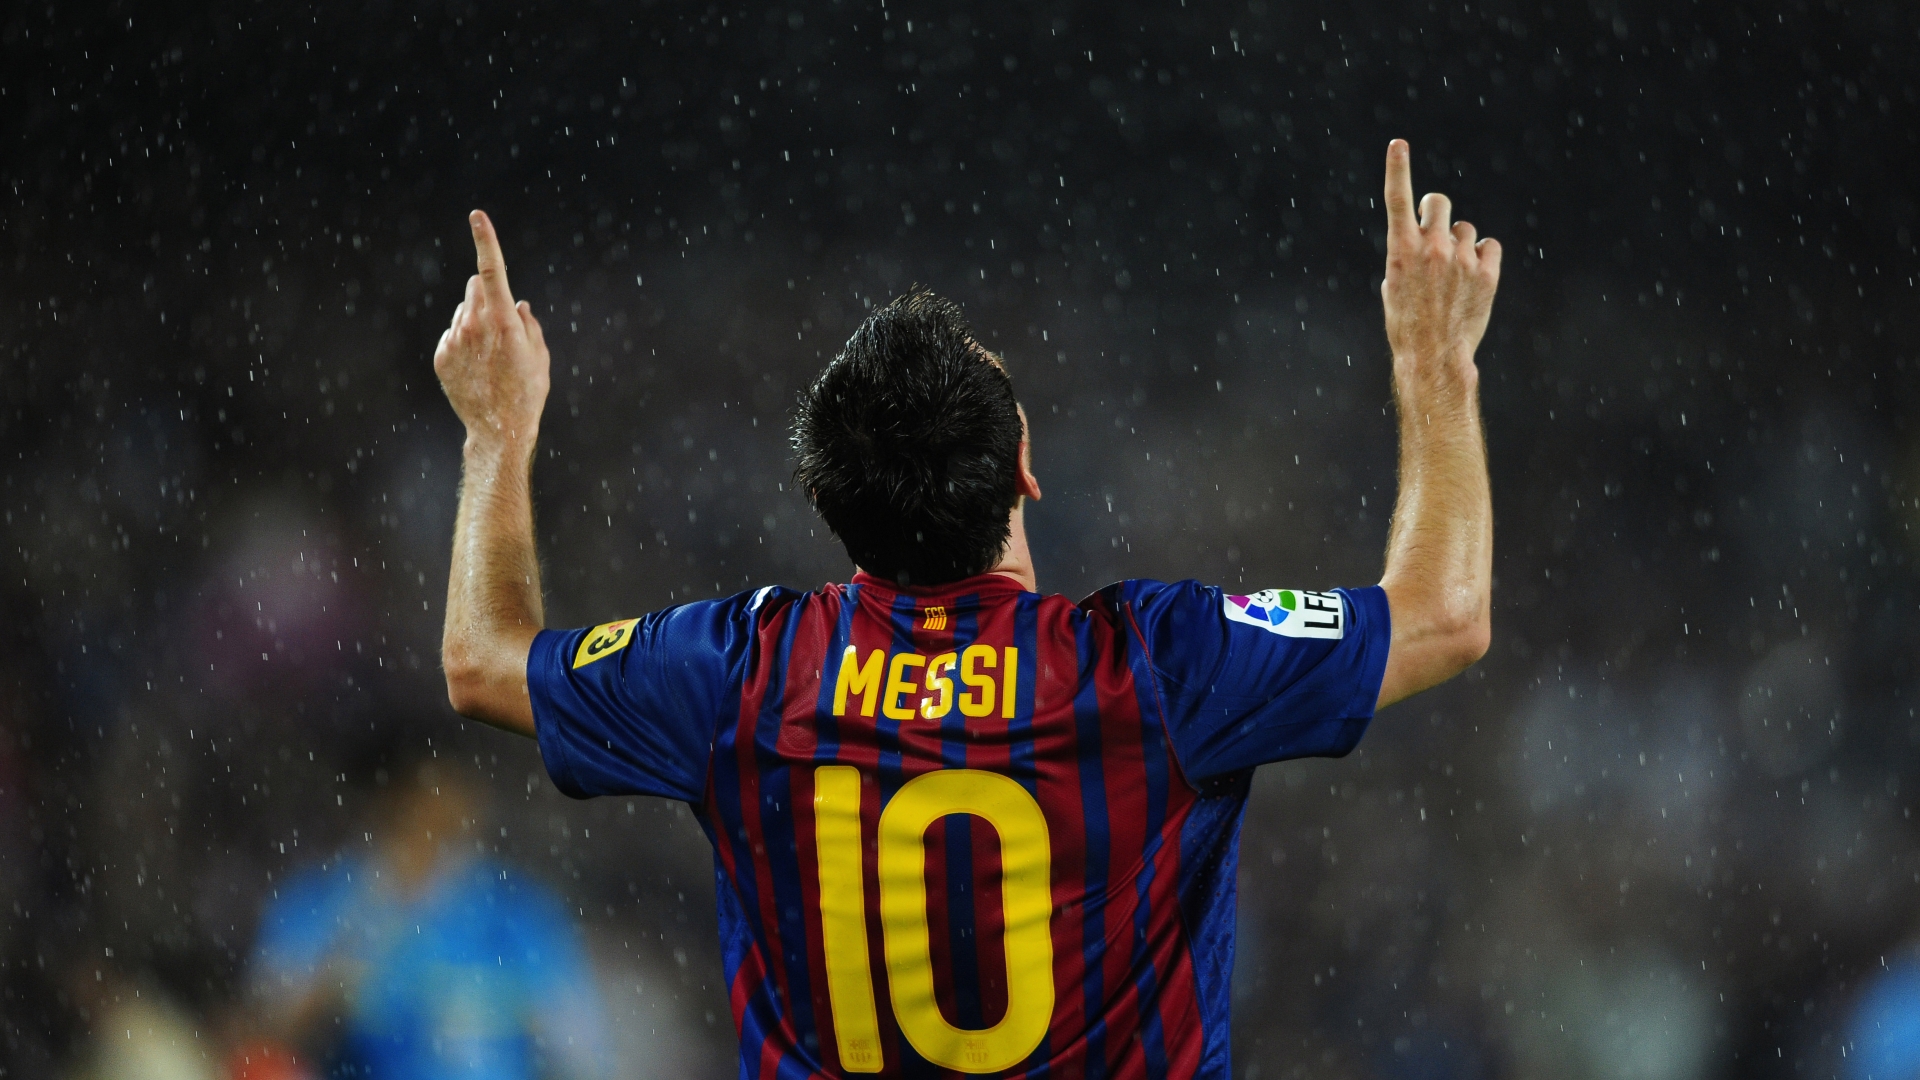 Lionel Messi in Rain for 1920 x 1080 HDTV 1080p resolution